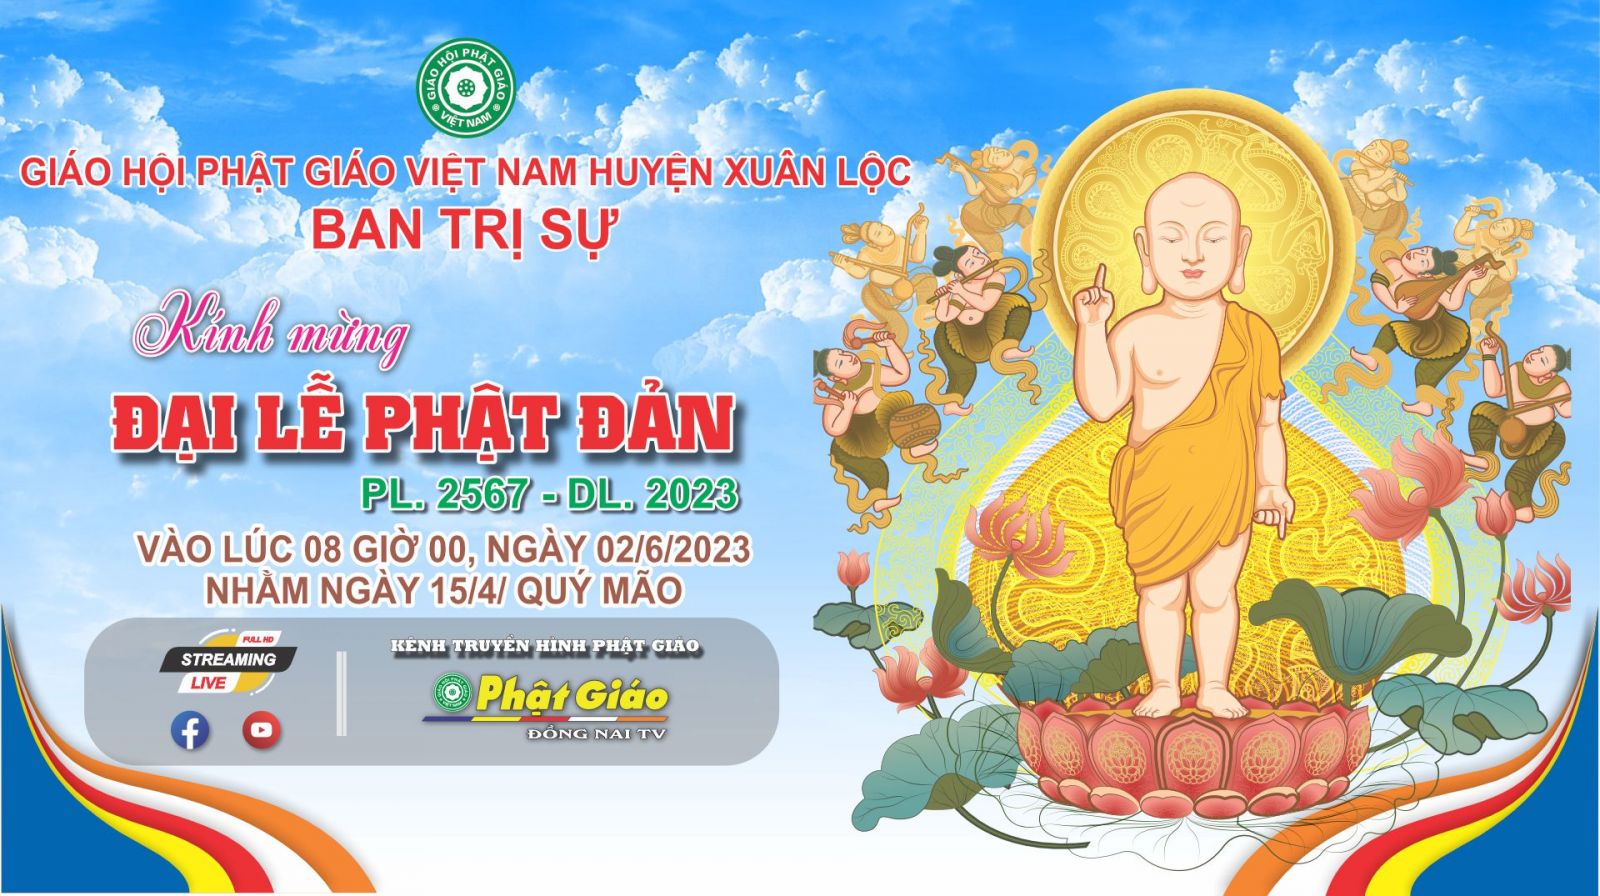 Trực tiếp: Ban Trị sự GHPGVN huyện Xuân Lộc trang nghiêm tổ chức Đại Lễ Phật Đản PL. 2567 - DL. 2023